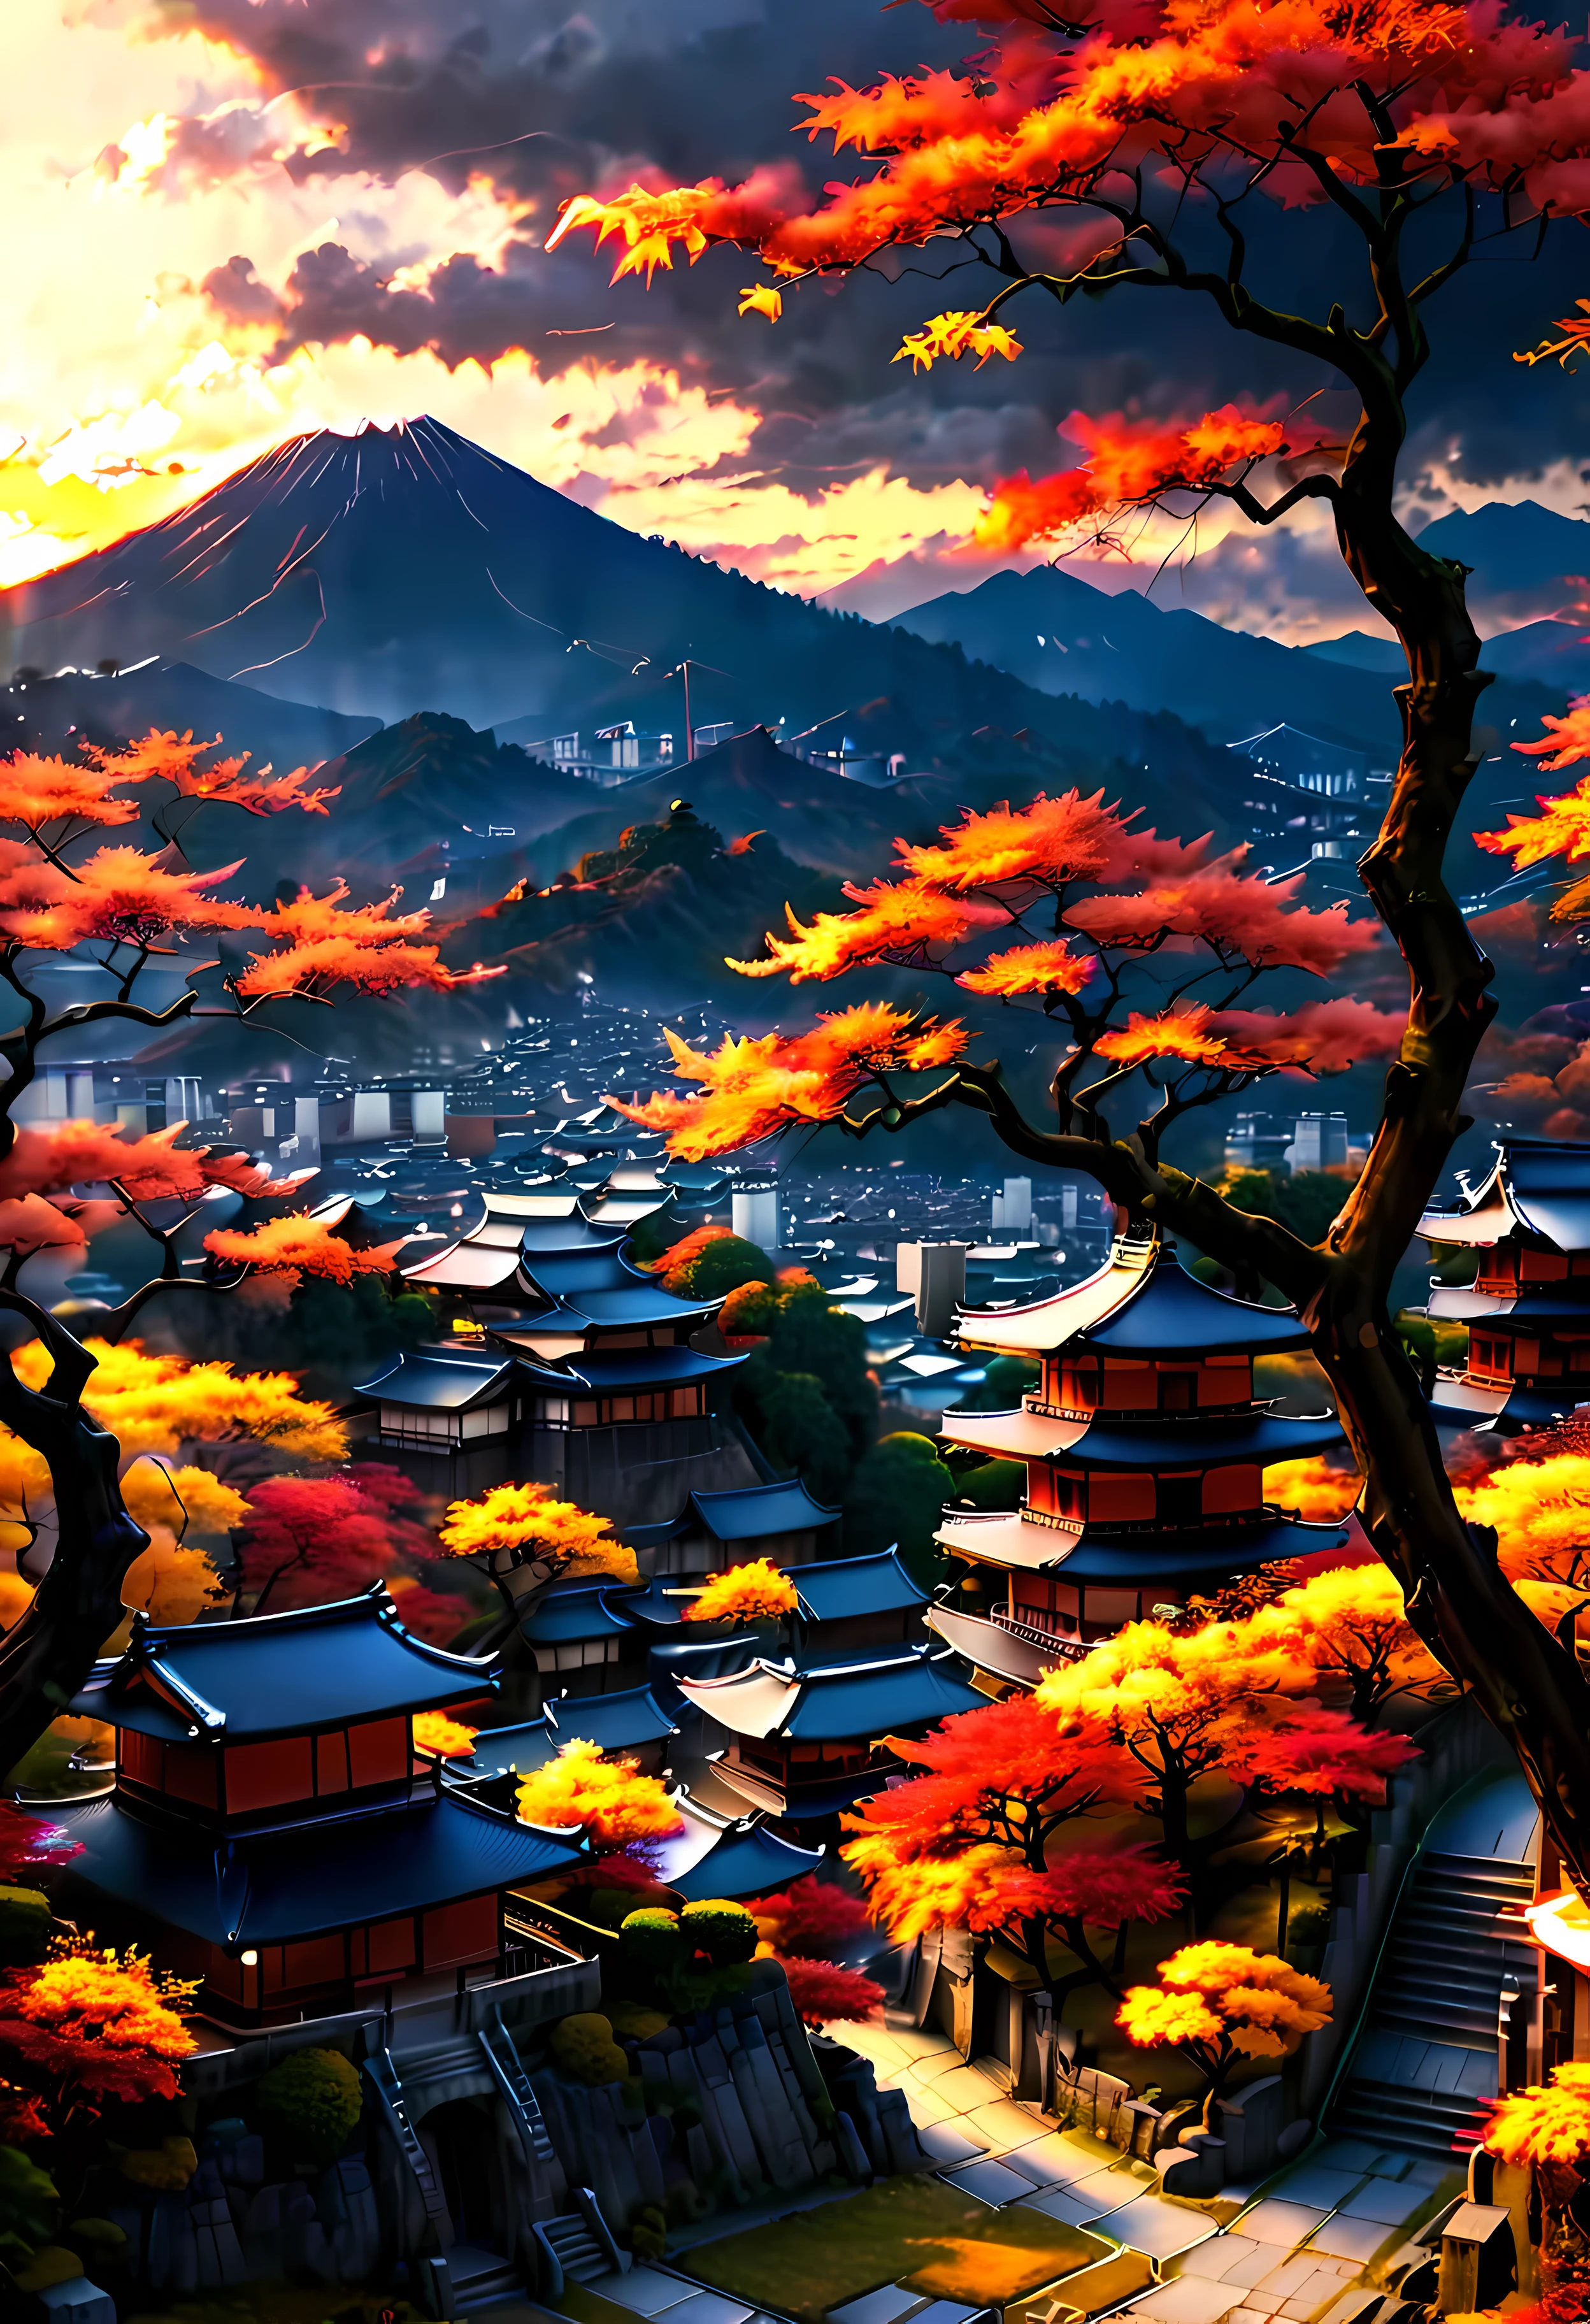 公園のテラスにある赤い秋の木は、山の景色とともに京都の古都を見下ろしています。, 夕日の光を浴びた魅惑的な古代都市の風景,((ゴールデンアワータイム):1.2),((日本の古代都市):1.2),((秋の夕焼け空):1.1),繊細なゴールデンアワーの光, 素晴らしい壁紙, 美しい環境, 楽観的なマットペインティング, 美しいデジタルアート, 日本の古代都市 background, 美しく緻密なシーン, UHD地下, UHD 風景, 壮大なコンセプトアート, 美しい古代都市. |(最大16K解像度の傑作), 最高の品質, (非常に詳細な CG Unity 16k 壁紙品質),(柔らかい色の 16K の非常に詳細なデジタル アート),非常に詳細な. | 完璧な画像,16k UE5,公式絵画, 超微細, 被写界深度, コントラストなし, 鮮明でシャープなフォーカス, プロ, ぼかしなし. | (((もっと詳しく))).